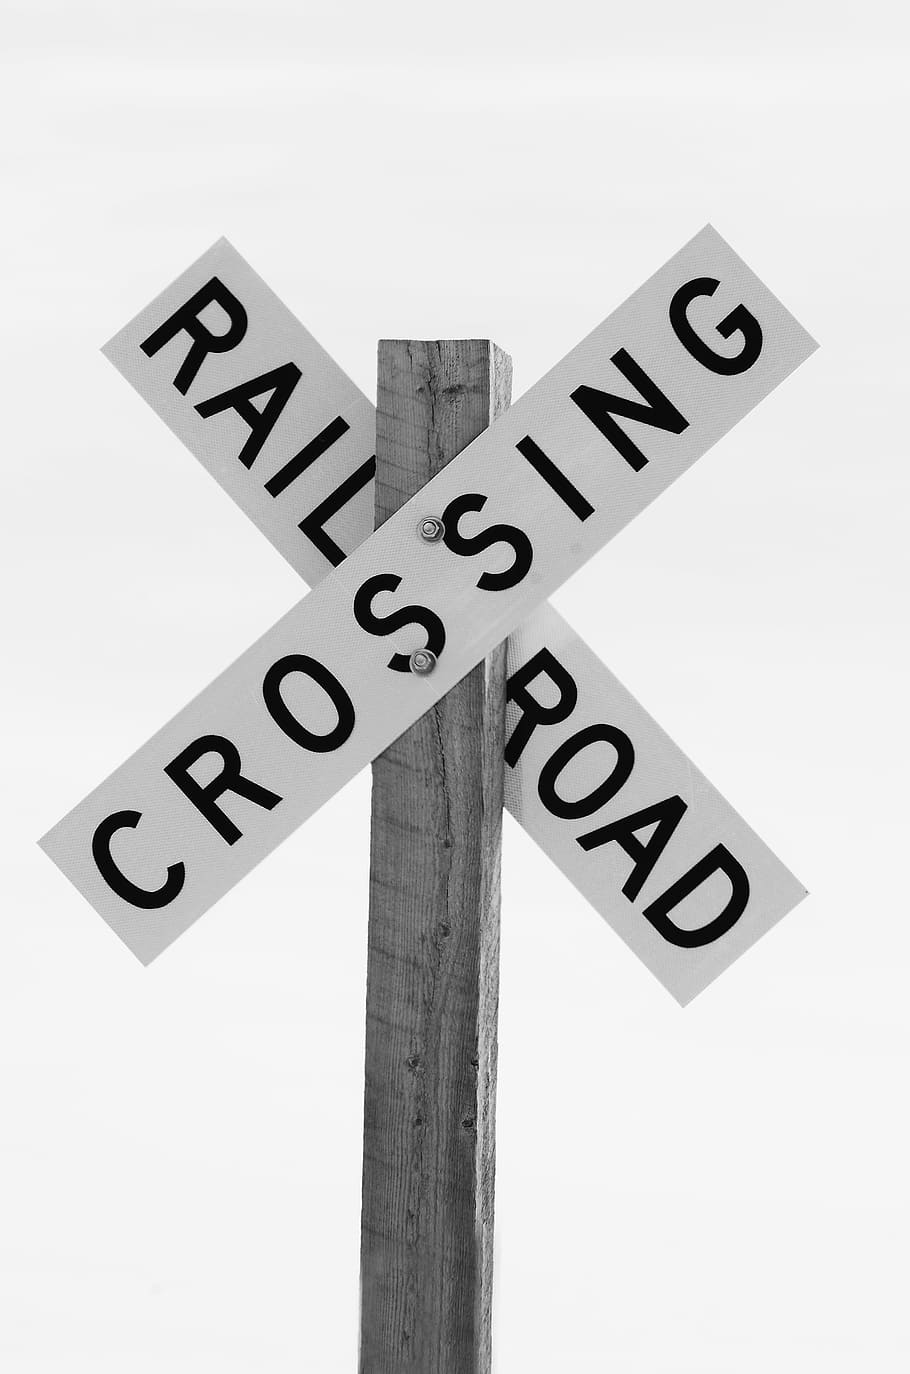 鉄道道路, 交差点, 看板, 踏切, 黒と白, 鉄道, 道路, 警告, 危険, 交通